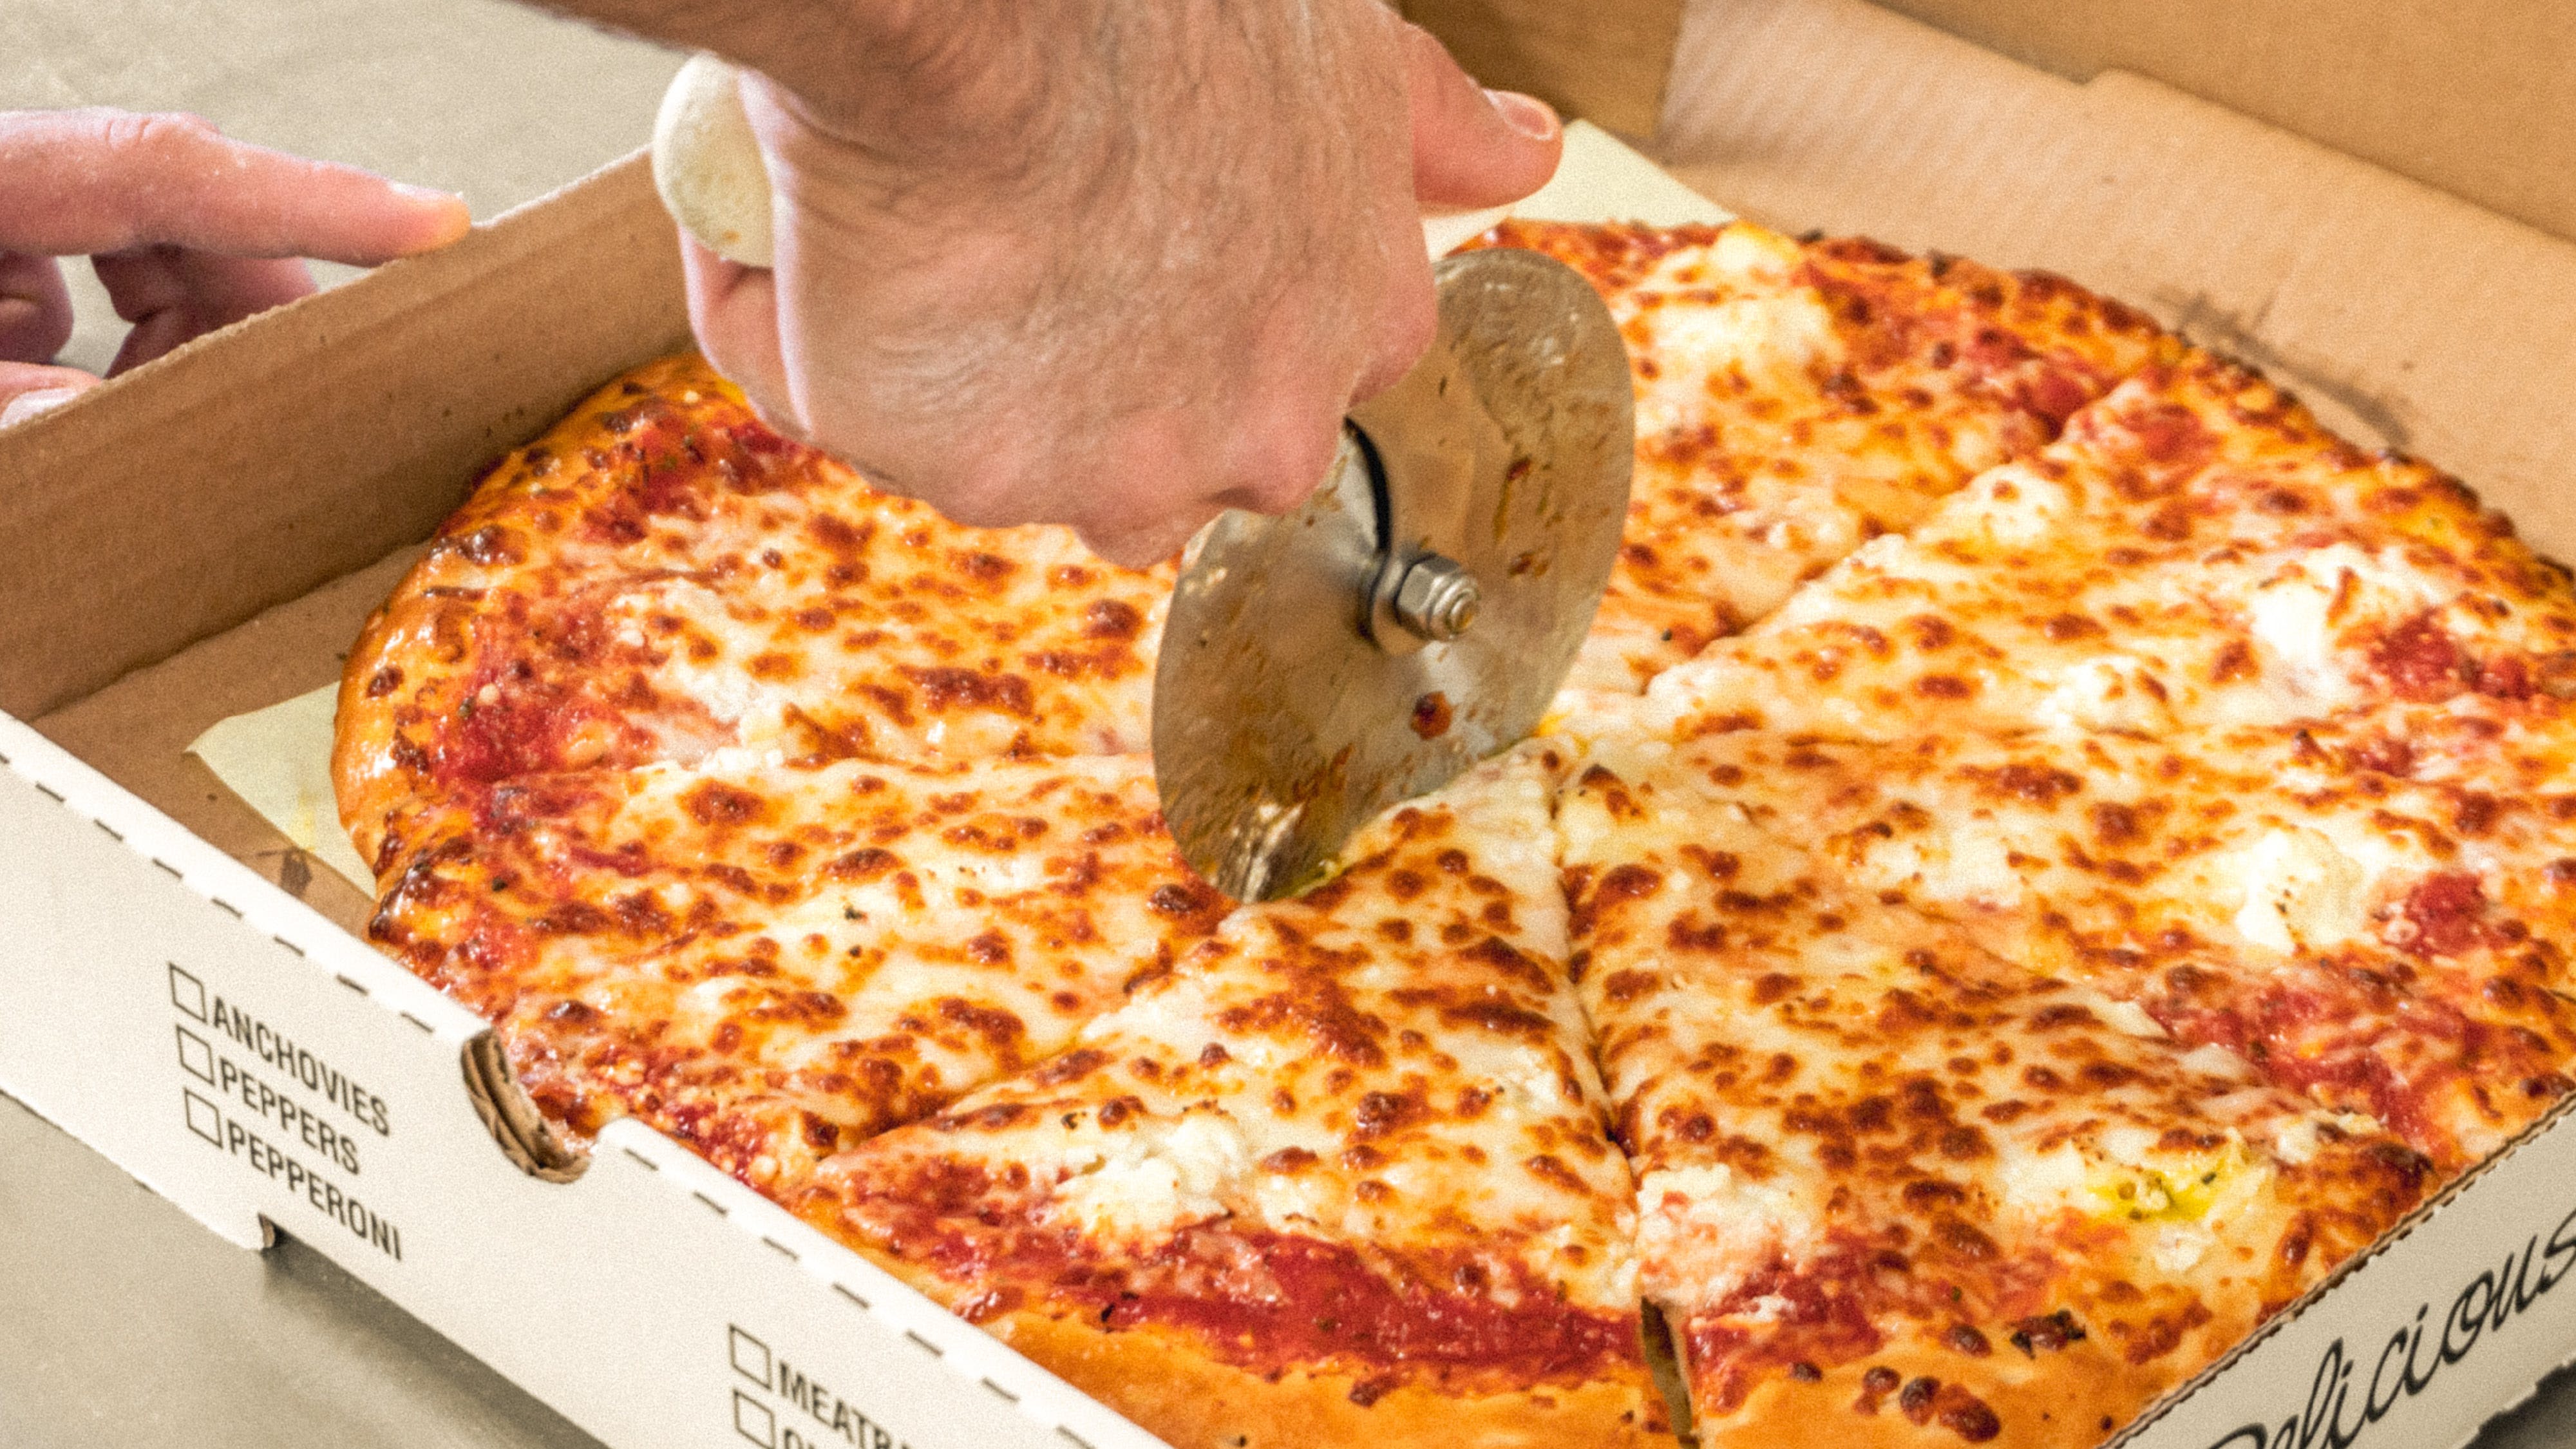 The Pizza Shack hero